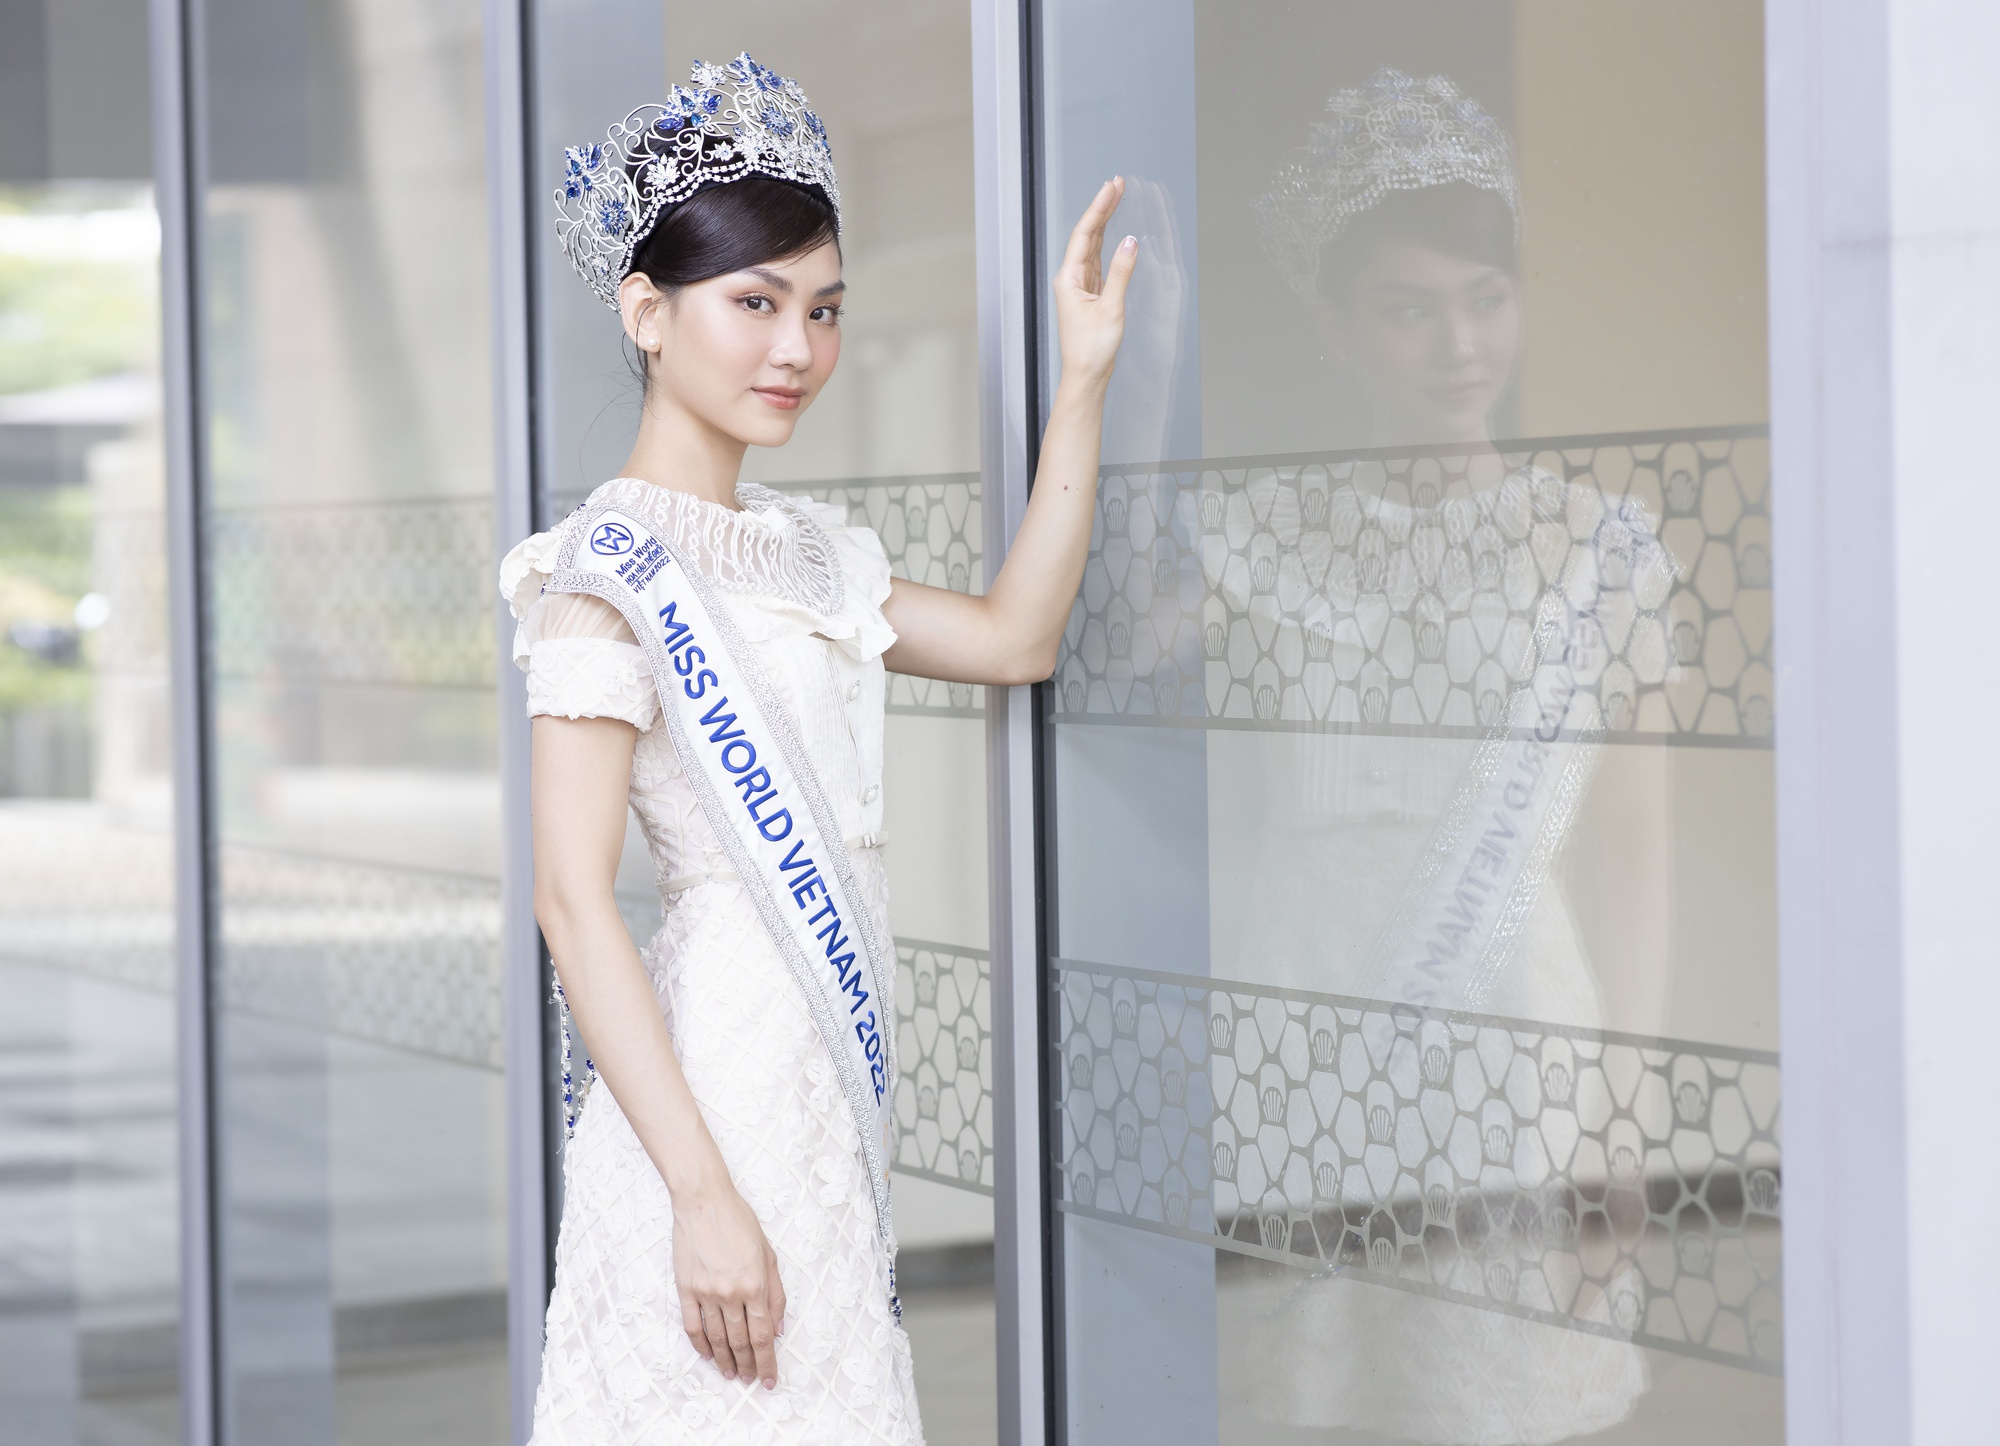 Hoa hậu Mai Phương phản hồi tin được dọn đường để đăng quang - Ảnh 5.